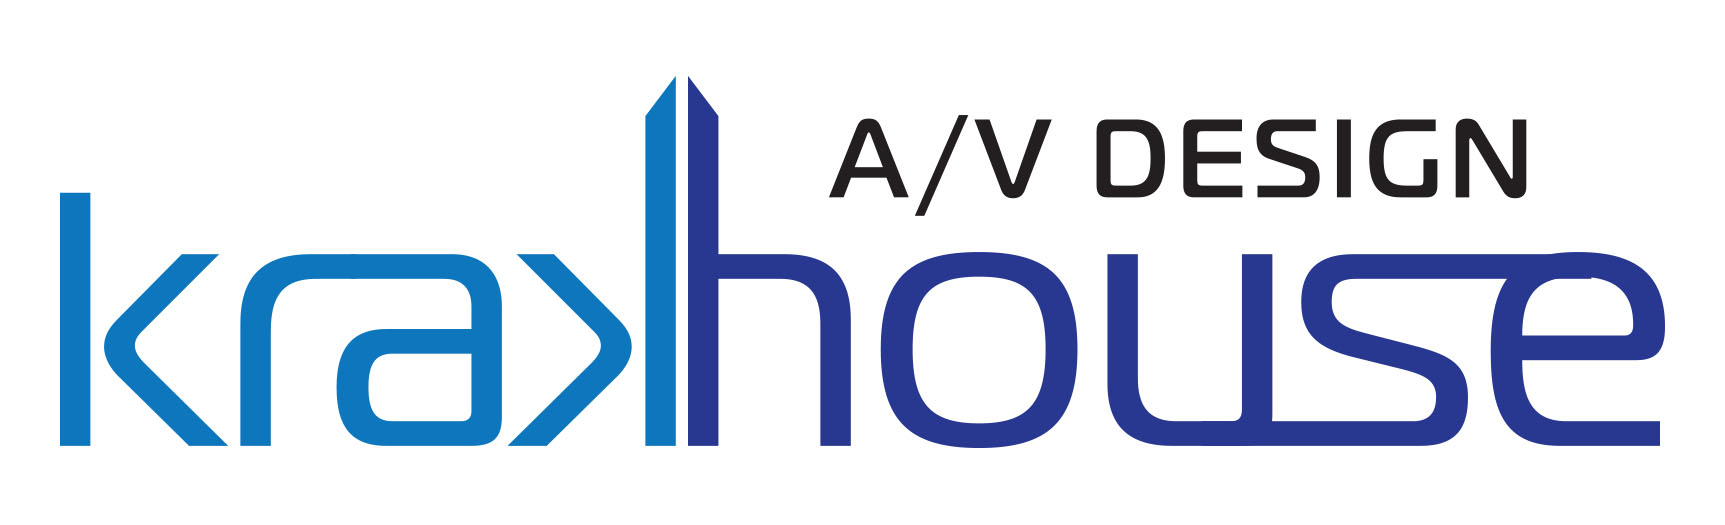 Krakhouse A/V Design Logo